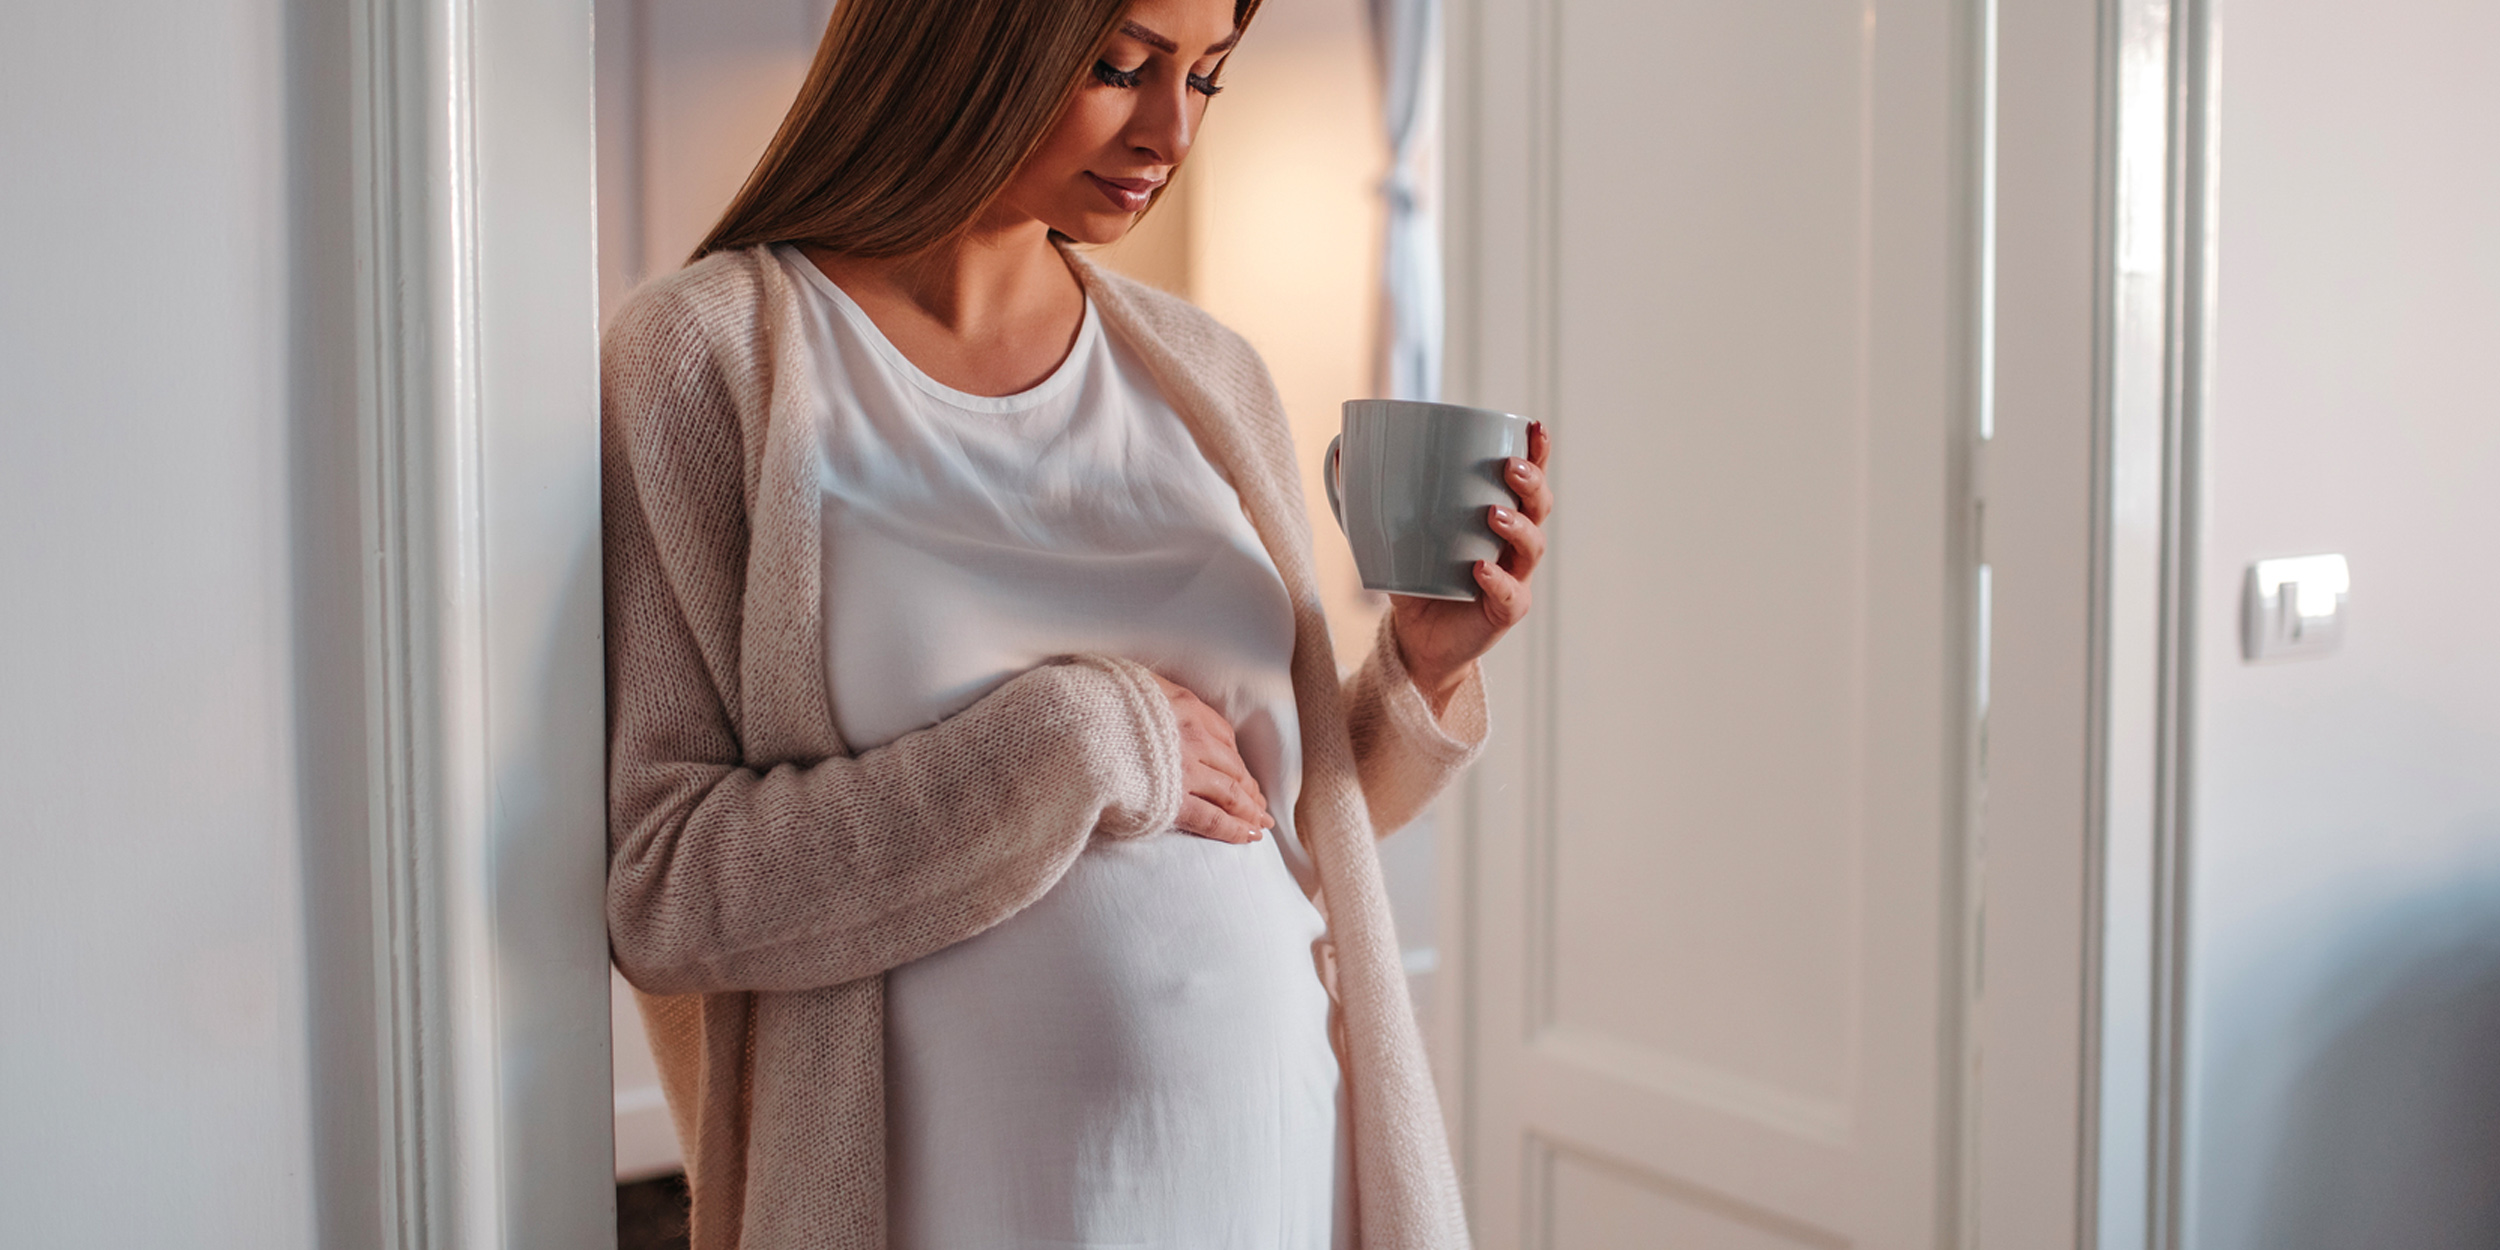 Опасно ли поднимать тяжести во время беременности?